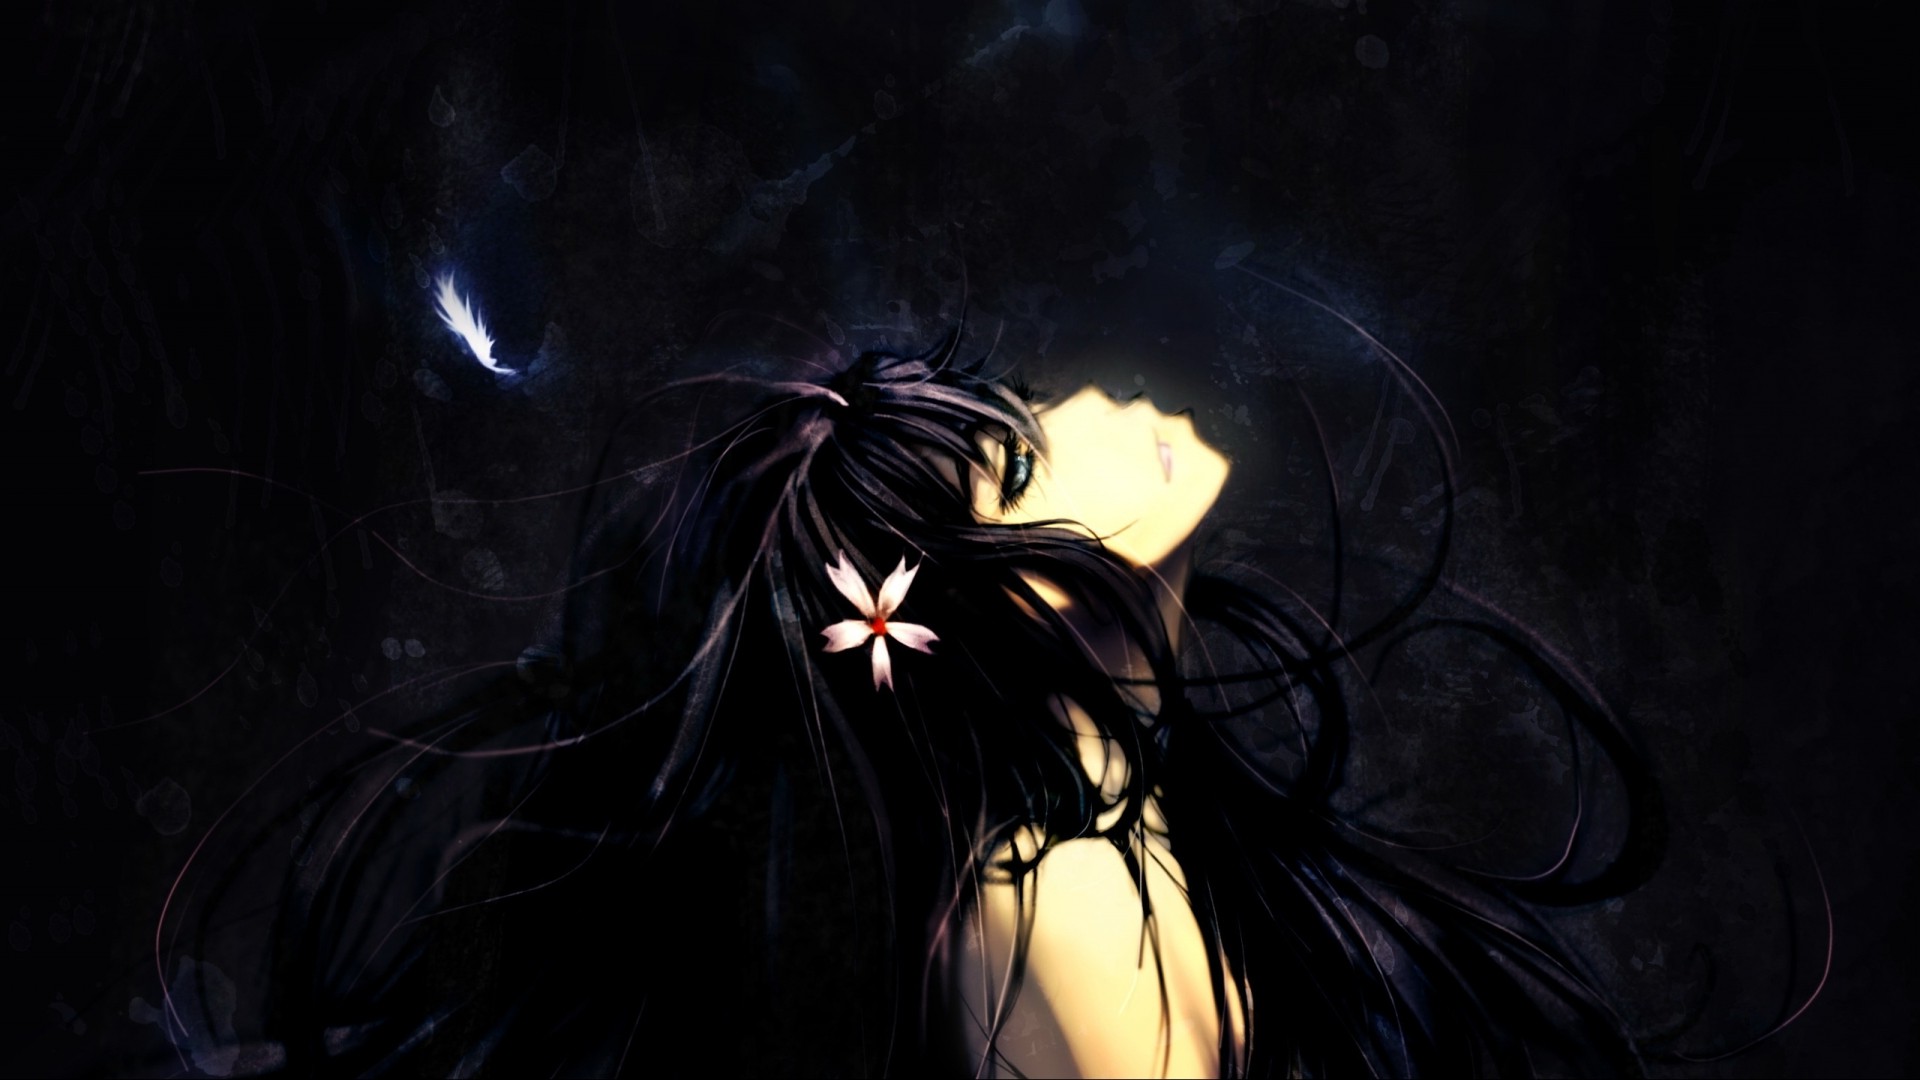 dunkle anime tapete,dunkelheit,licht,himmel,schwarzes haar,nacht